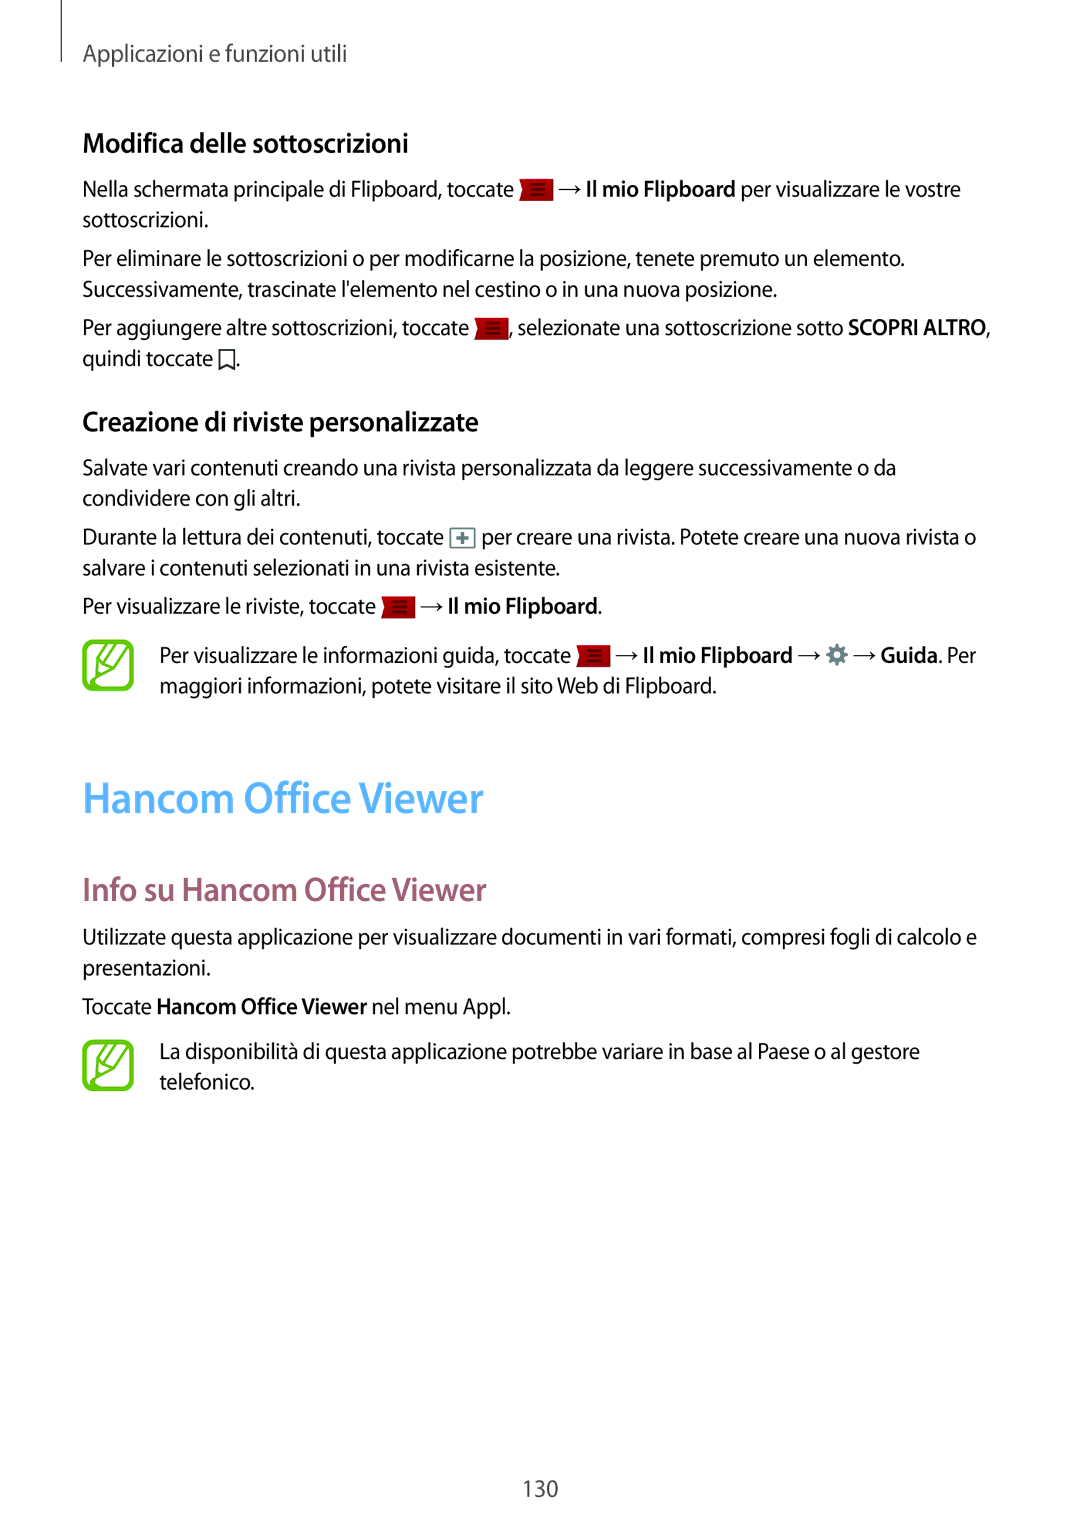 Samsung SM-T805NTSAOMN, SM-T805NZWAXEO, SM-T805NTSAITV manual Info su Hancom Office Viewer, Modifica delle sottoscrizioni 